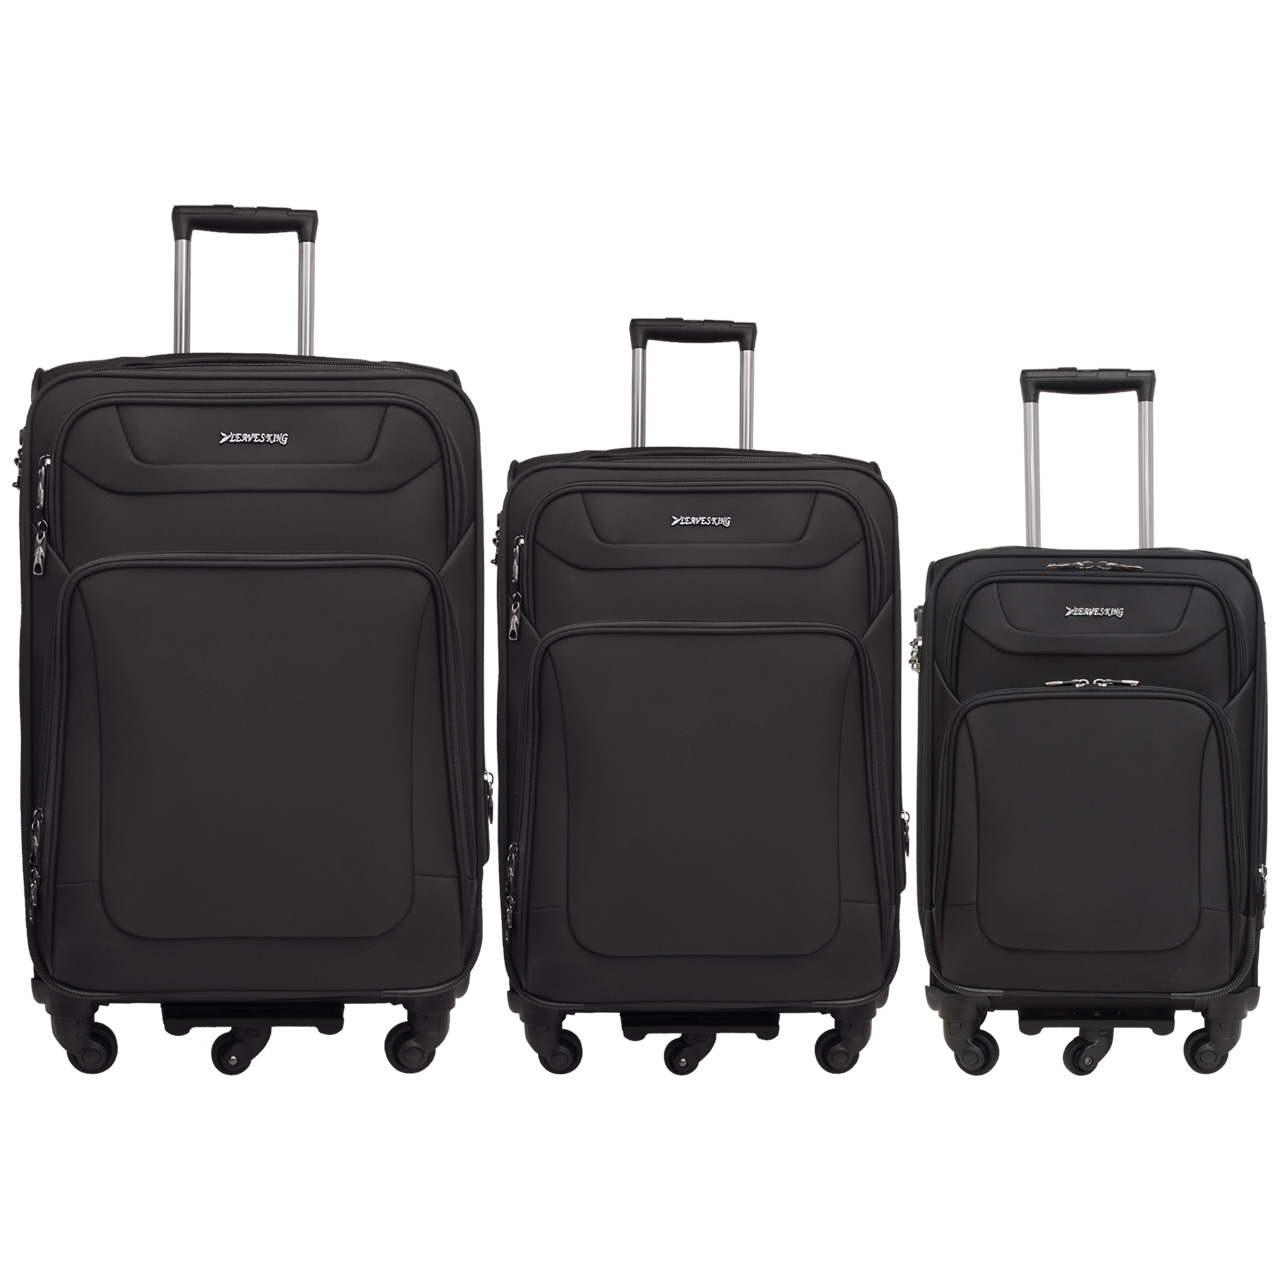 مجموعه سه عددی چمدان لیوزکینگ مدل 001